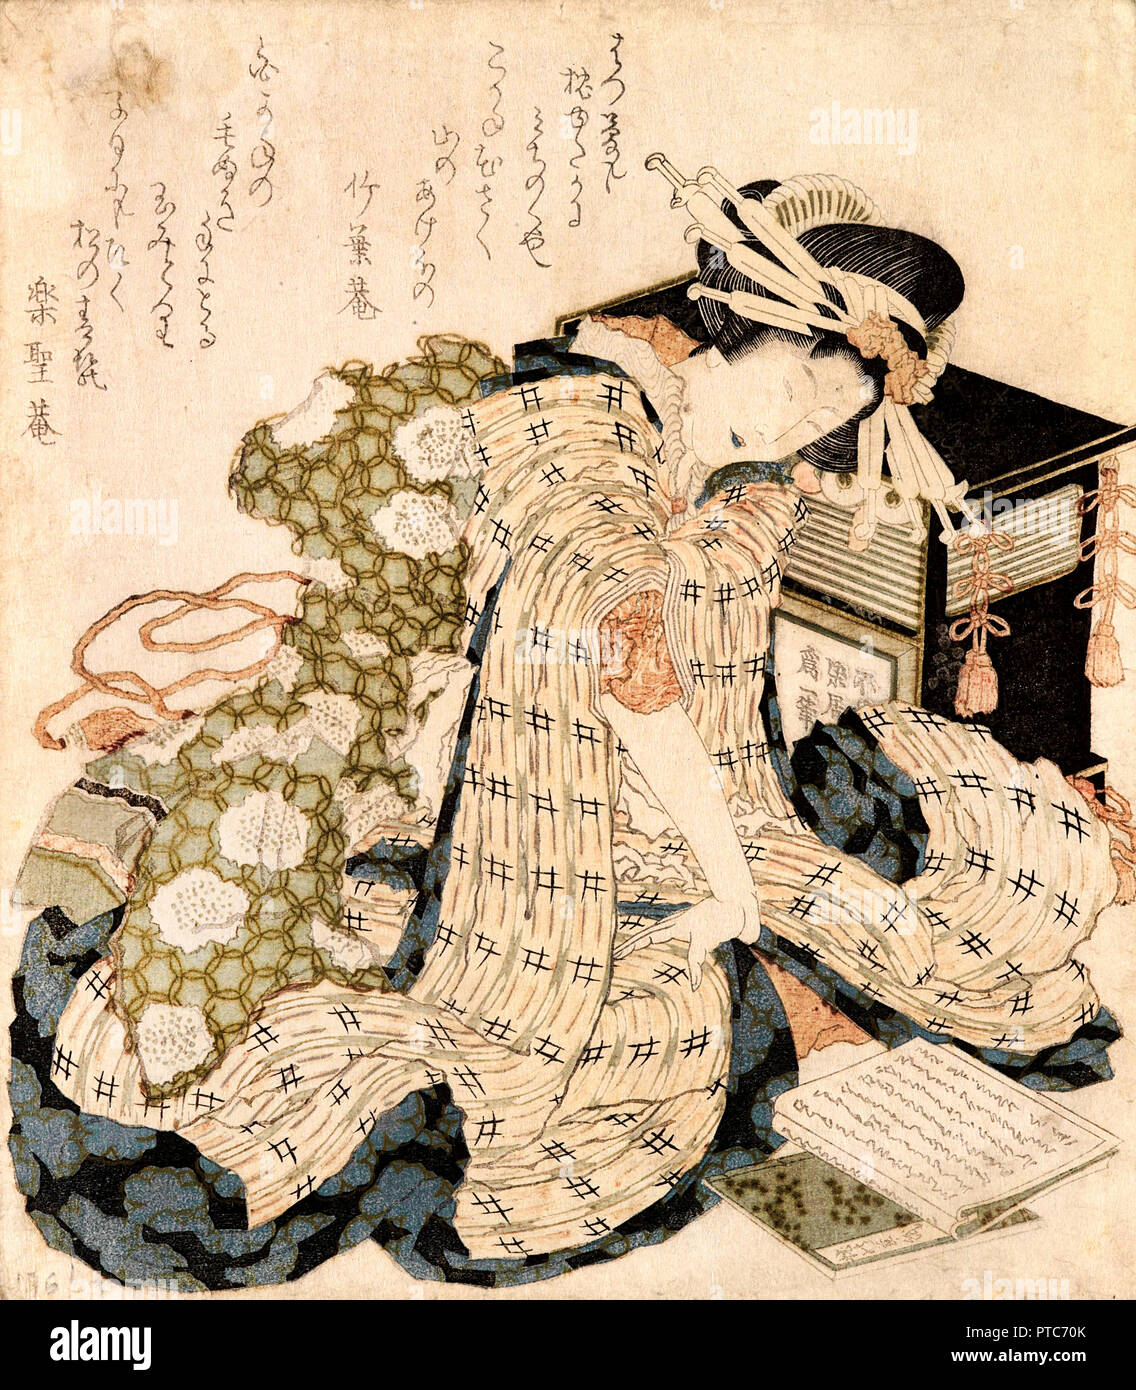 Katsushika Hokusai, Kurtisane schläft, Ende des 18. Jahrhunderts - Anfang des 19. Jahrhunderts, Farb Holzschnitt, Museum der Schönen Künste von Bilbao, Bilbao, Spanien. Stockfoto